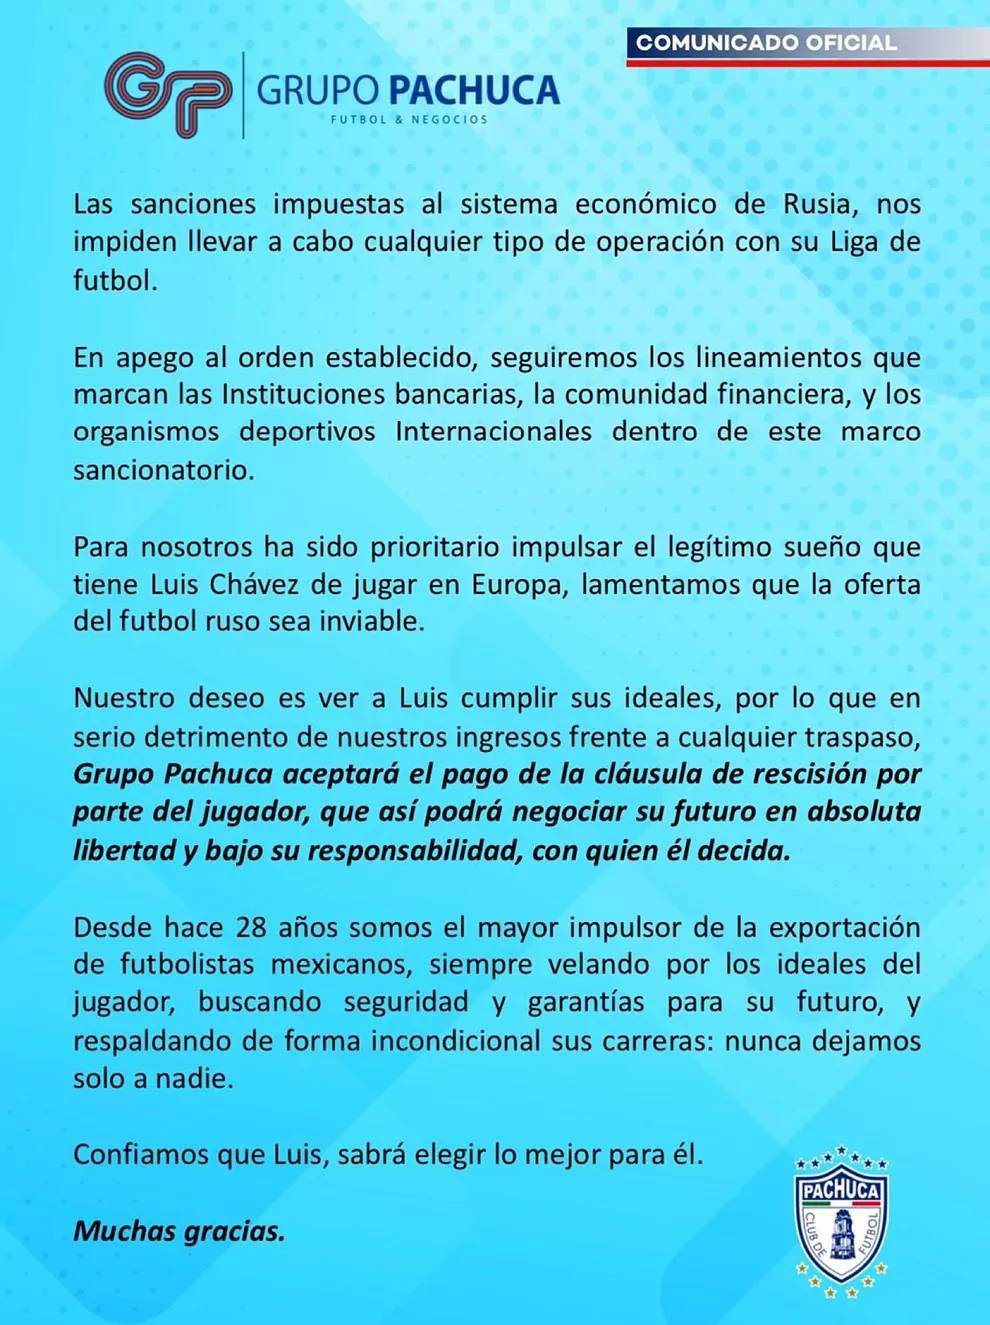 Pachuca le responde a Luis Chvez y sus quejas: "Renunciamos a dinero extra; recibi todo el apoyo"